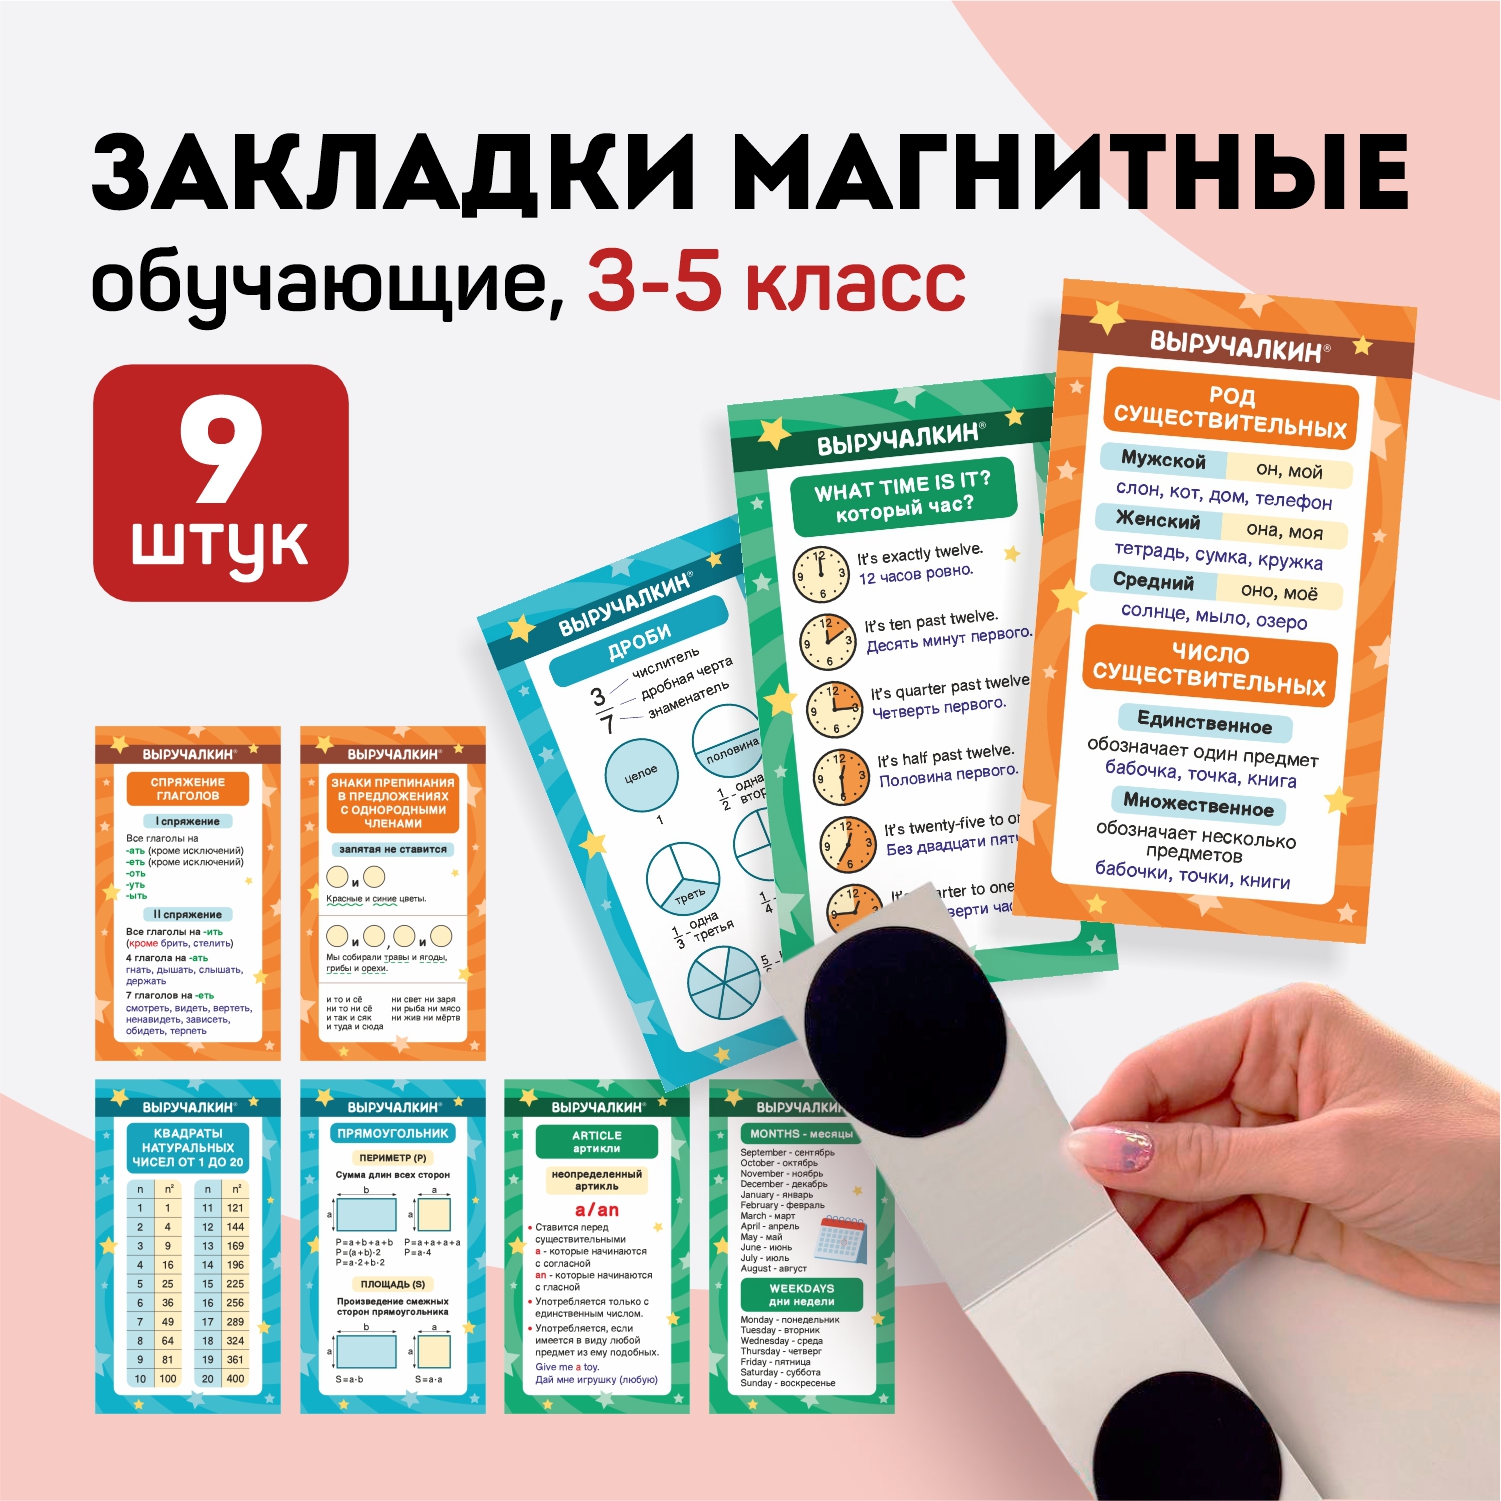 Закладки для книг Выручалкин postcard017, школьные 3-5 класс, магнитные, 9 шт